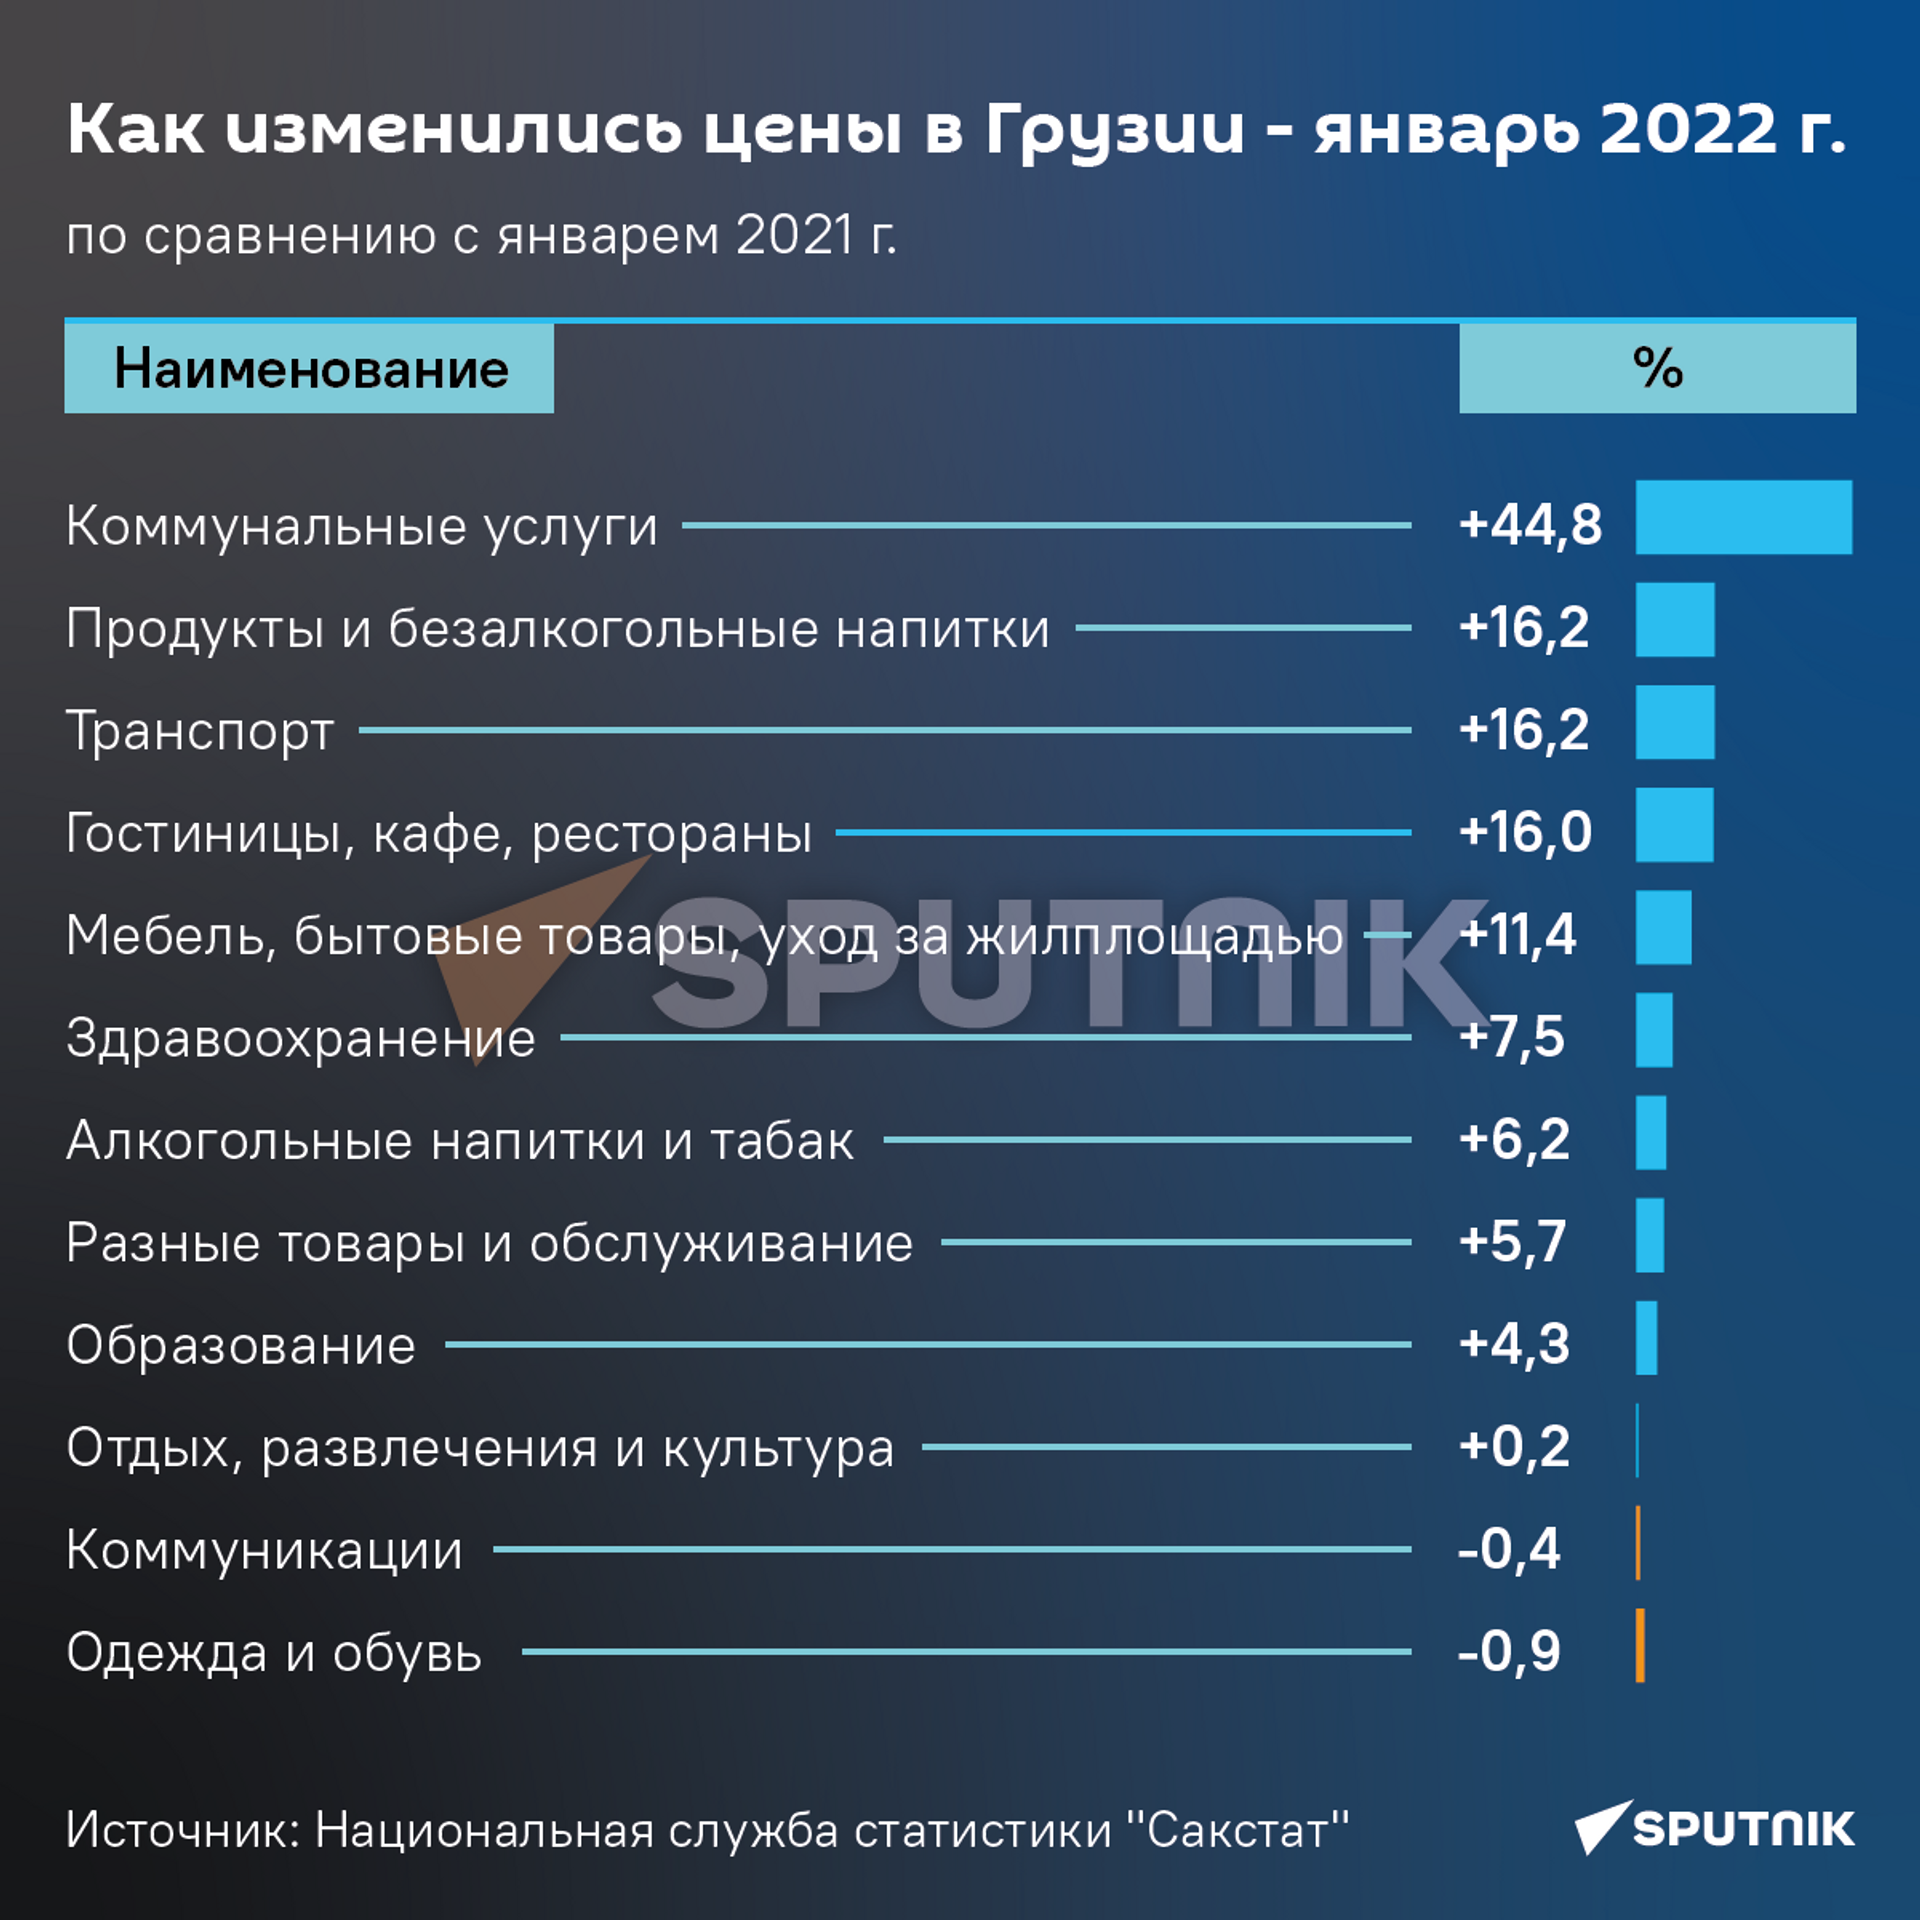 Как изменились цены в Грузии - январь 2022 года к январю 2021 года - Sputnik Грузия, 1920, 08.02.2022